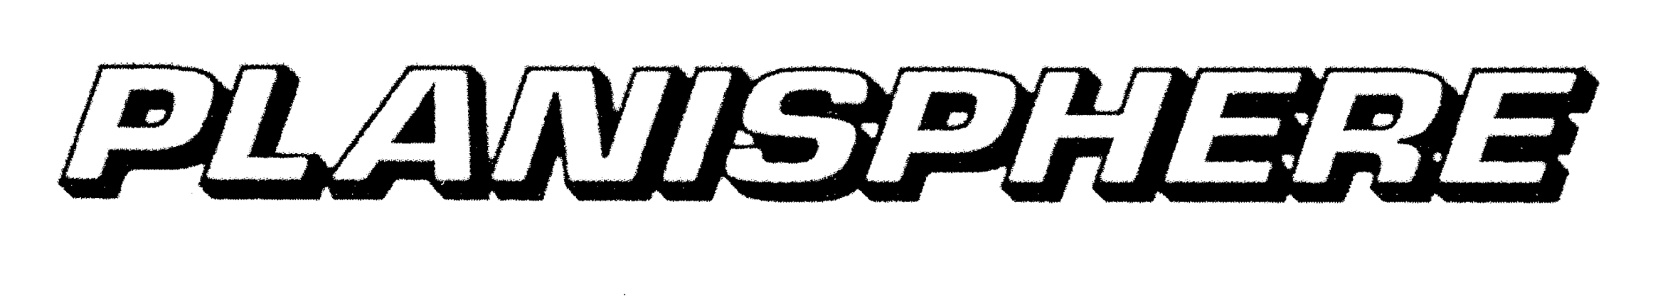 Planisphere-Logo